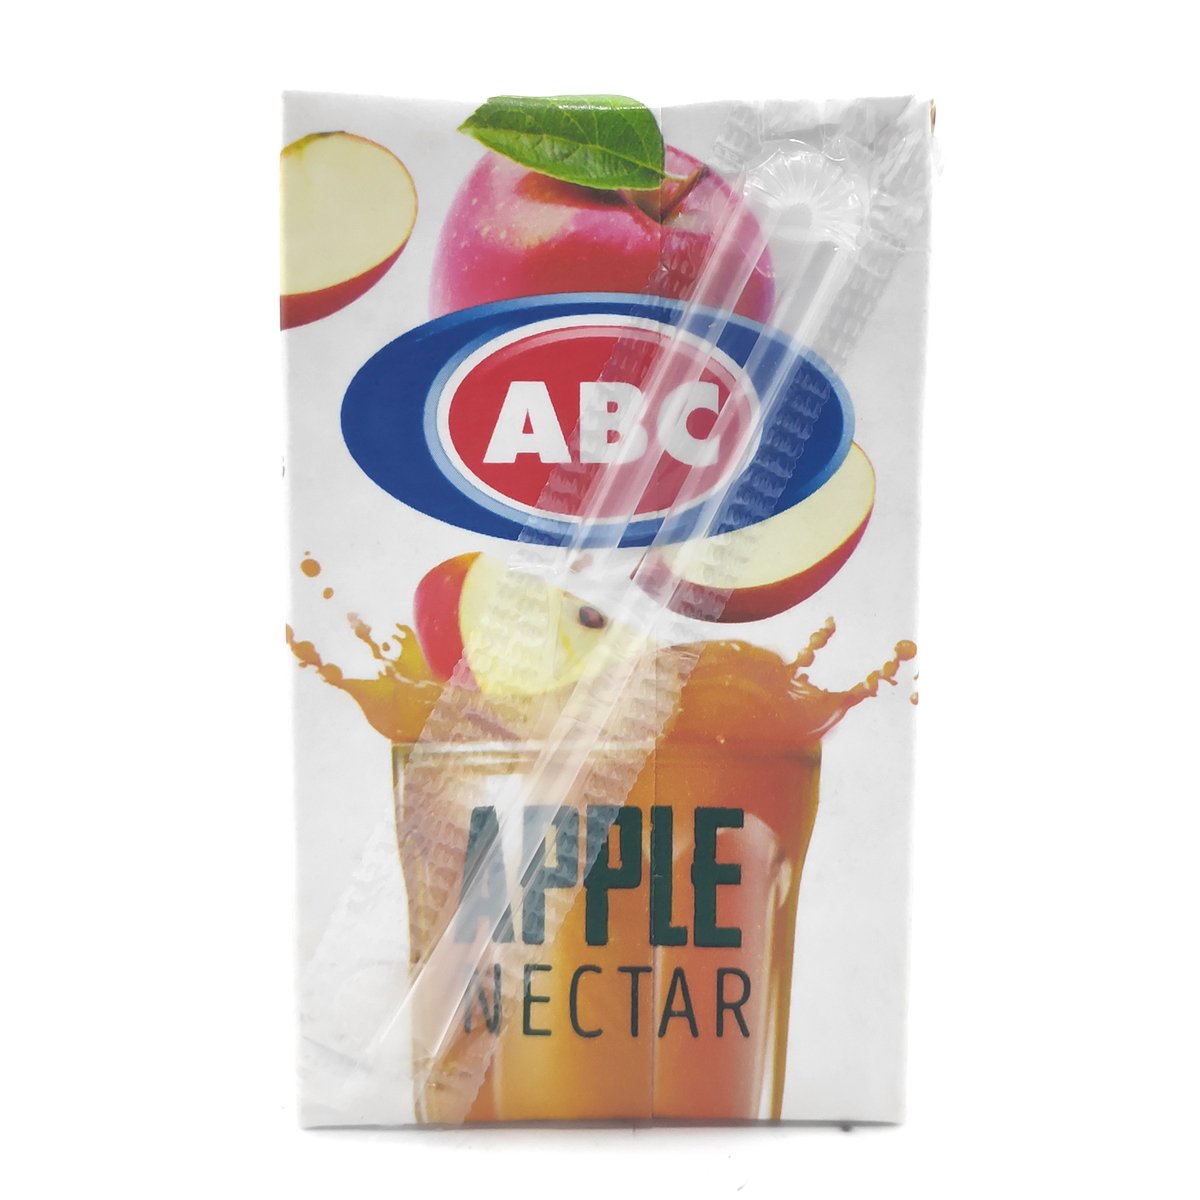 ABC Apple Nectar 250ml